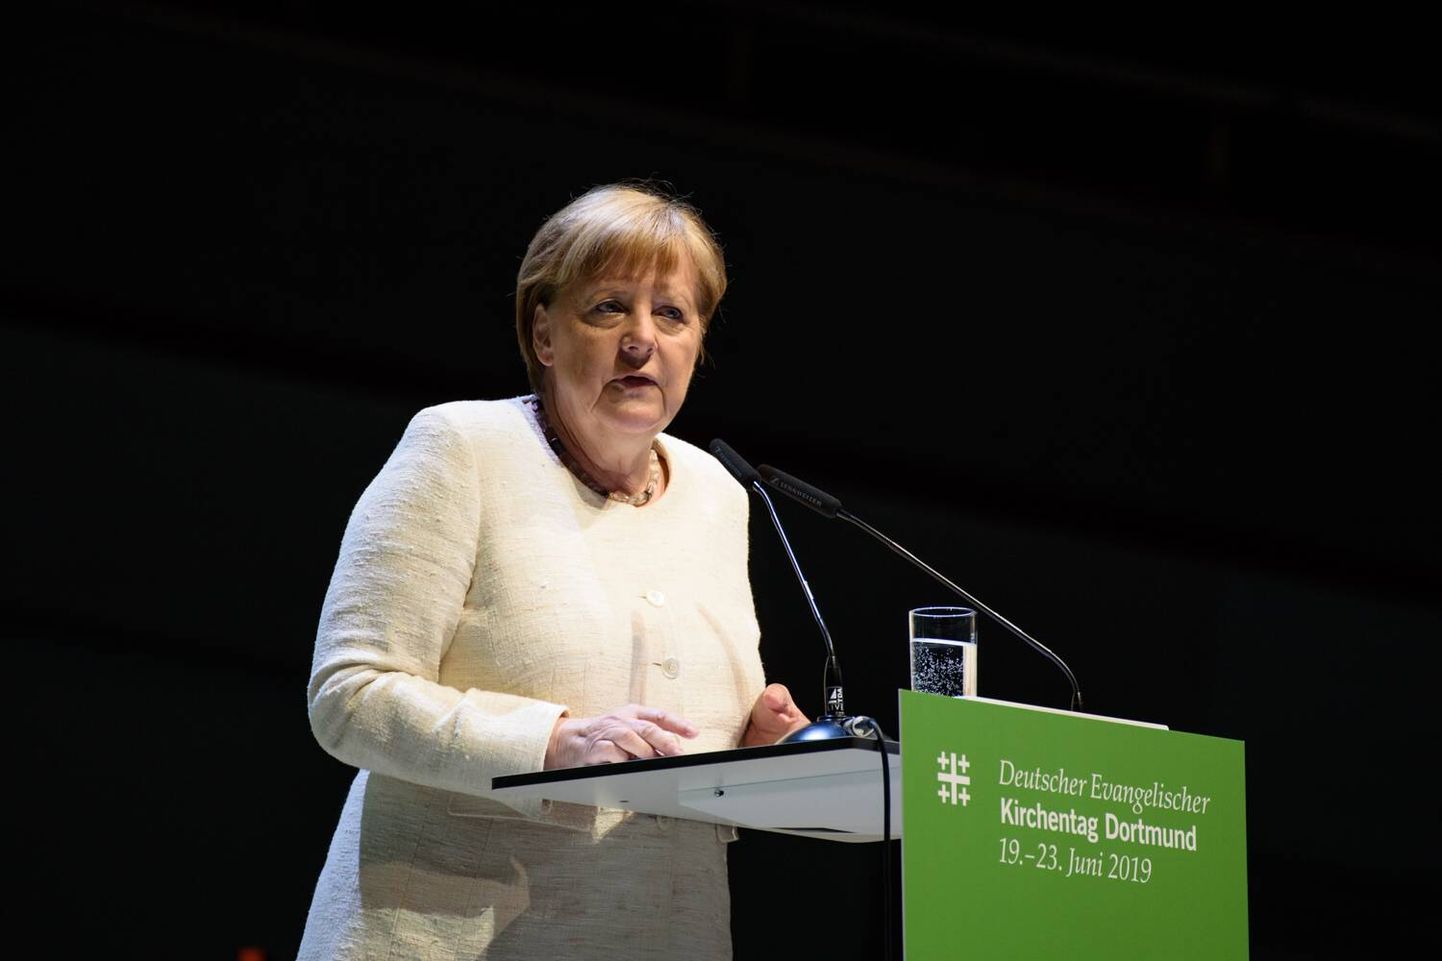 Saksa kantsler Angela Merkel laupäeval Dortmundis protestantlikul kirikukogul kõnet pidamas.